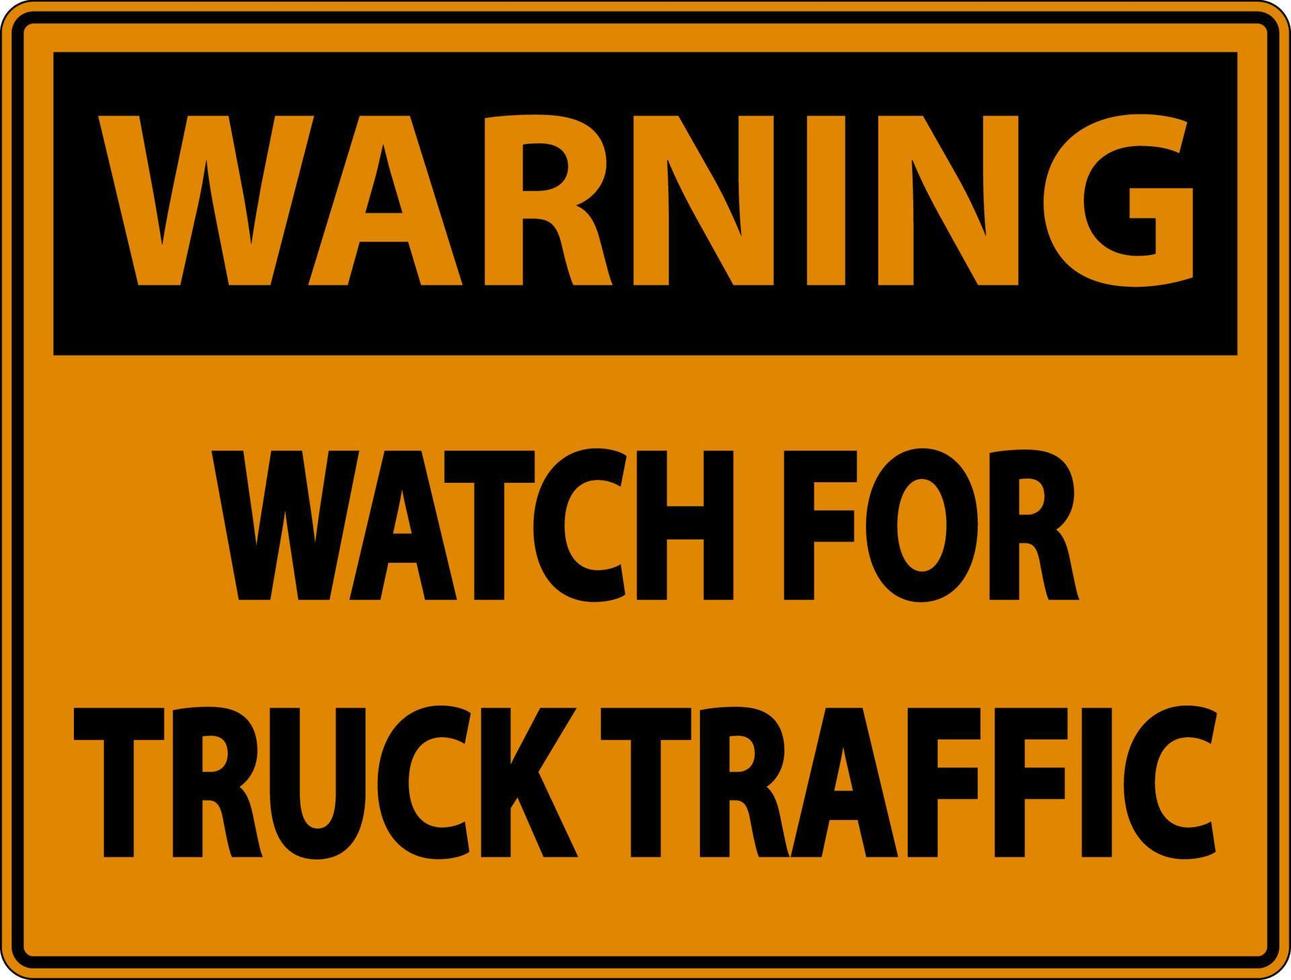 reloj de advertencia para señales de tráfico de camiones sobre fondo blanco vector